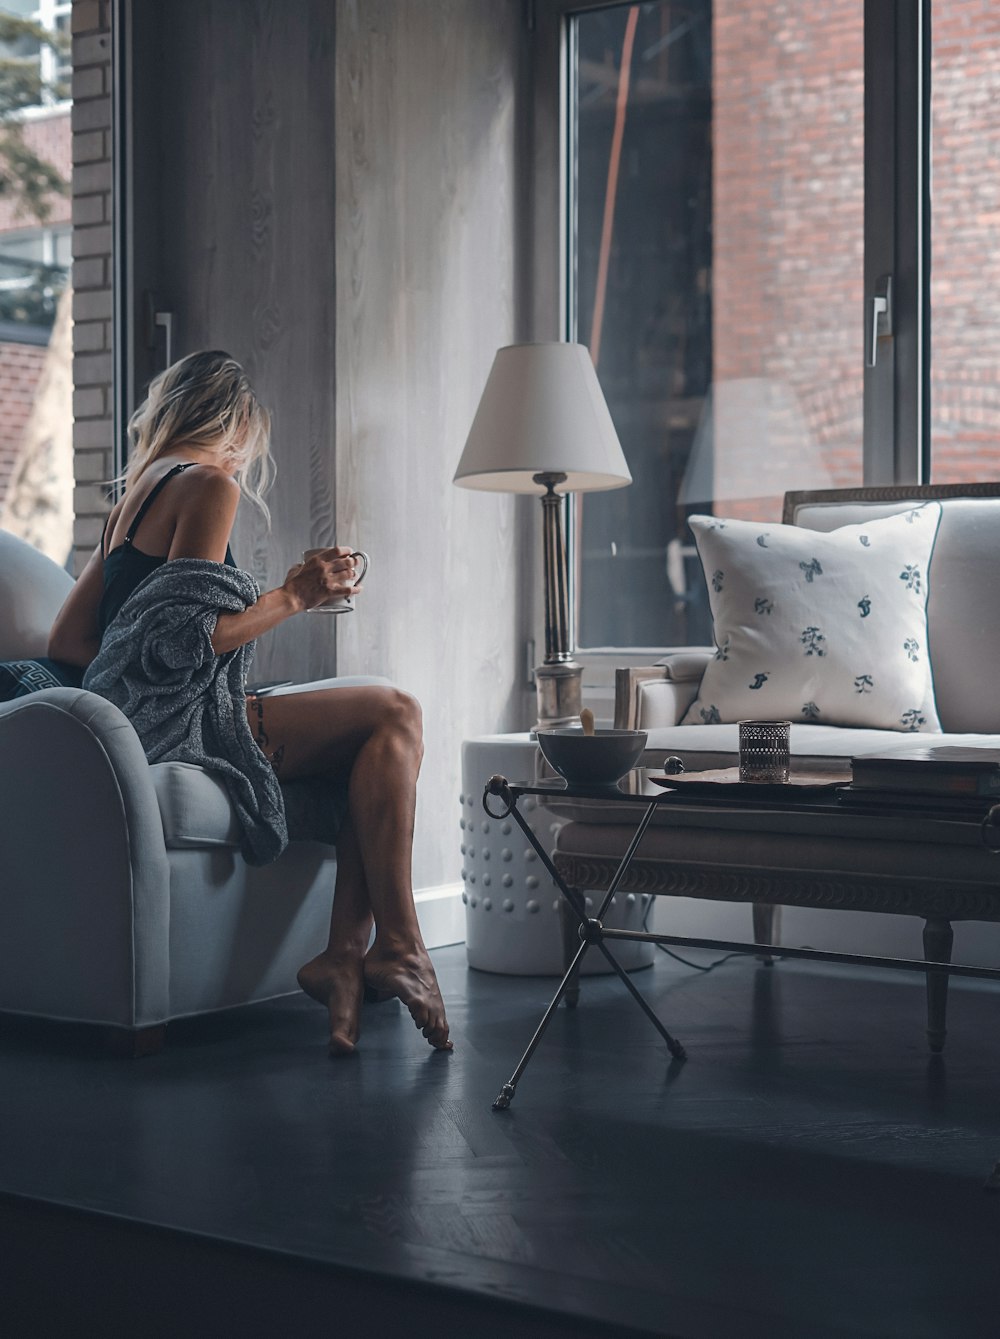 マグカップを持って灰色のソファの椅子に座っている女性